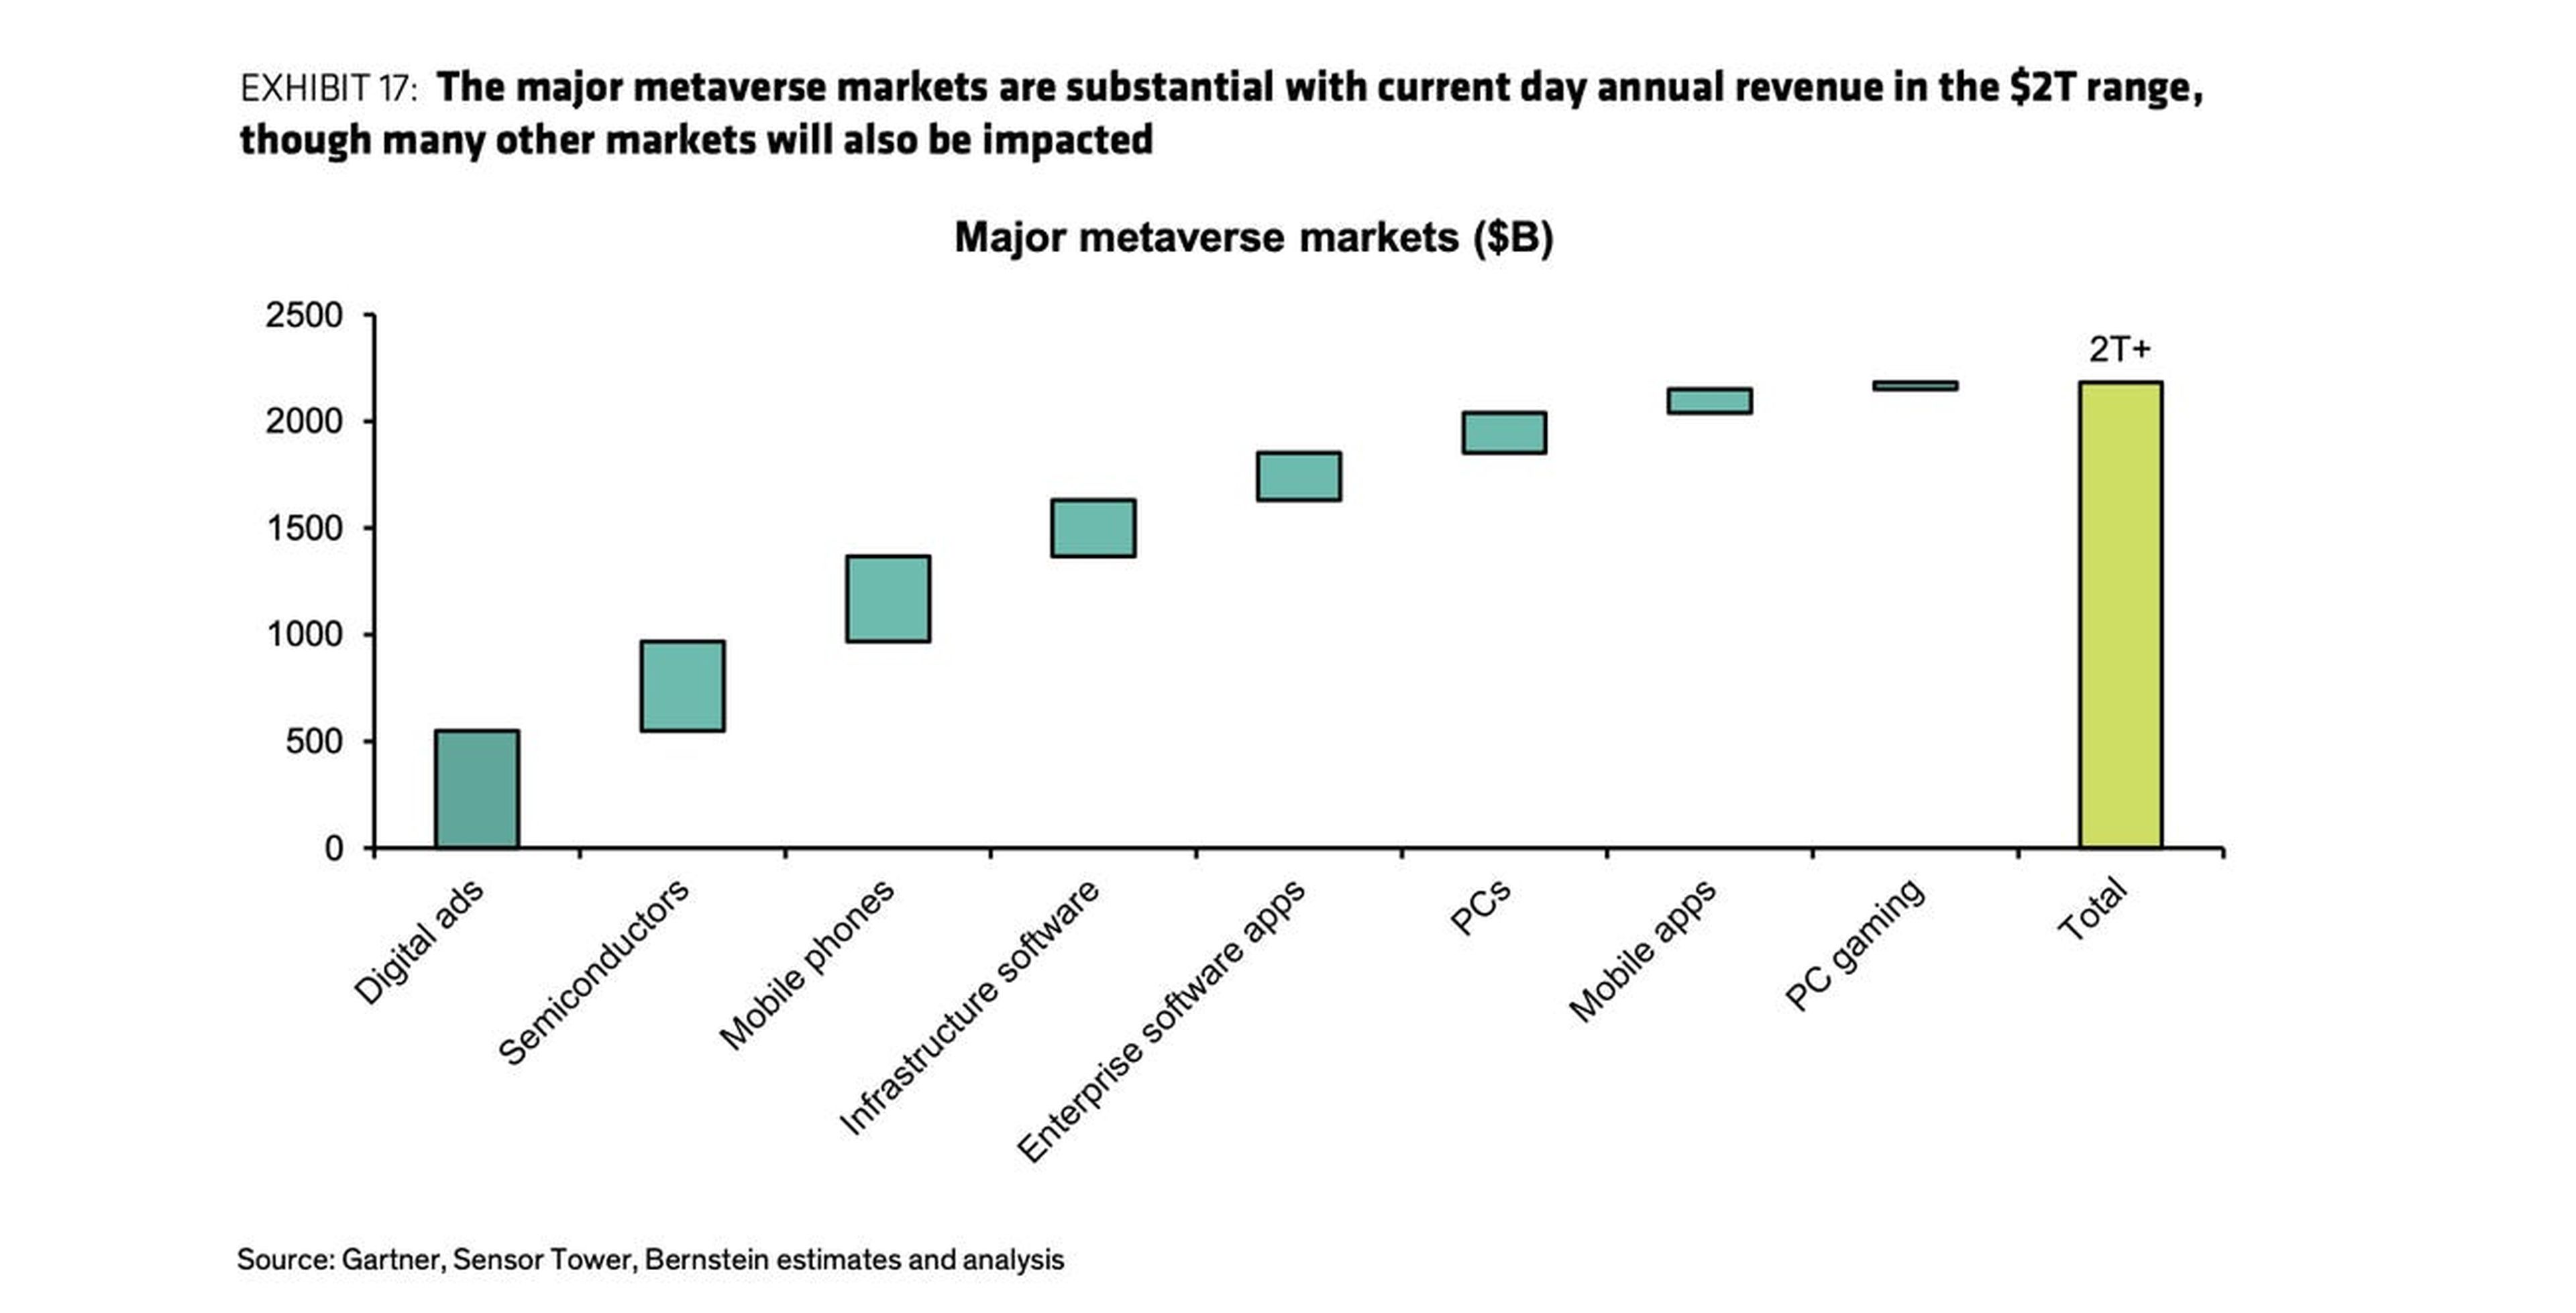 Los principales mercados del metaverso son considerables, con unos ingresos anuales actuales del orden de los 2 billones de dólares, pero muchos otros mercados también se verán afectados.